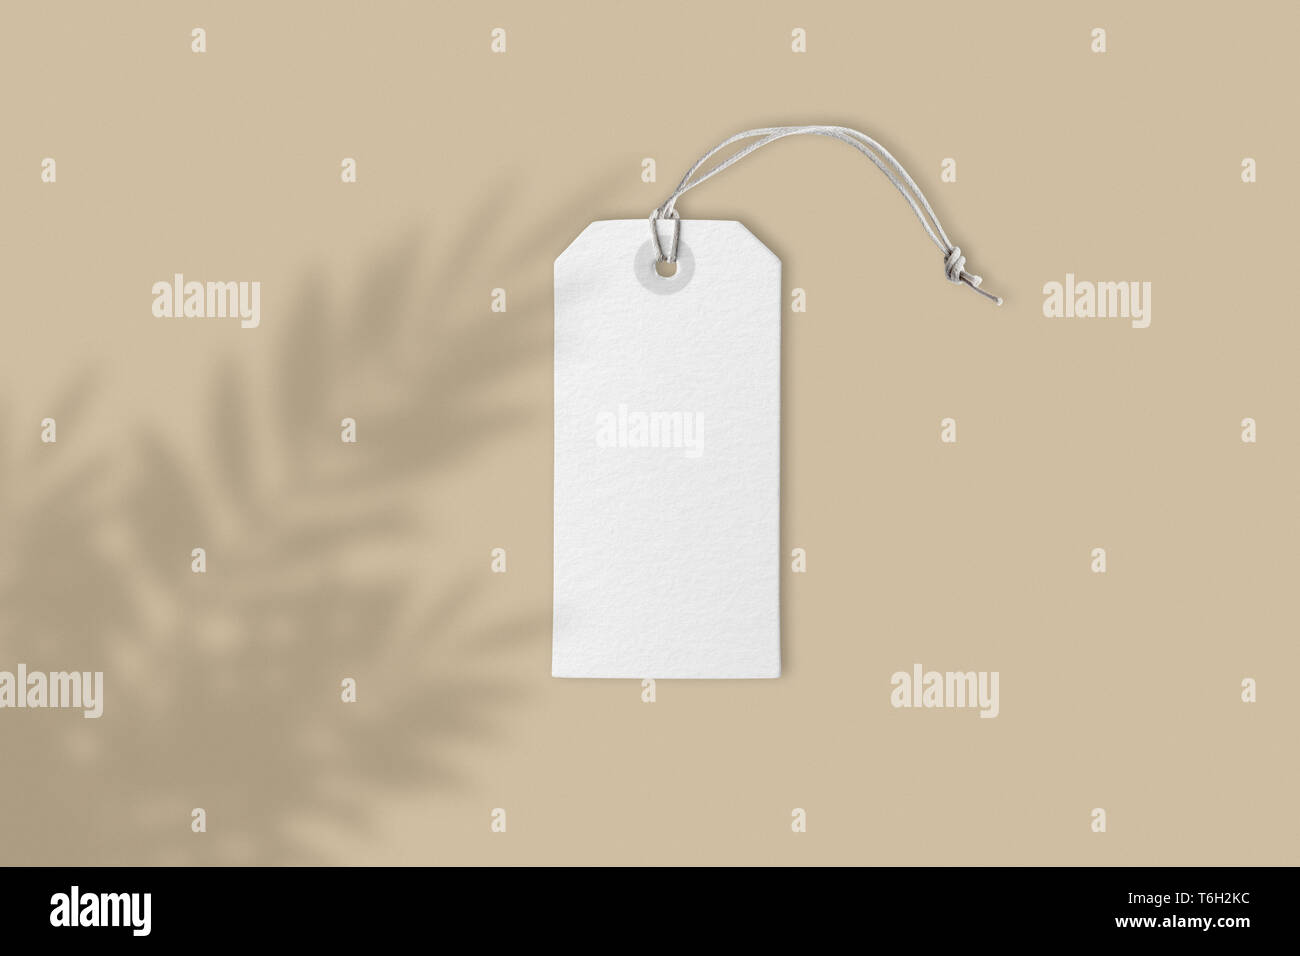 Leere weiße Preis label Tag auf braunem Hintergrund mit kreativen Blume Schatten, Frontansicht mockup mit Kopie Platz, close-up real Bild Stockfoto